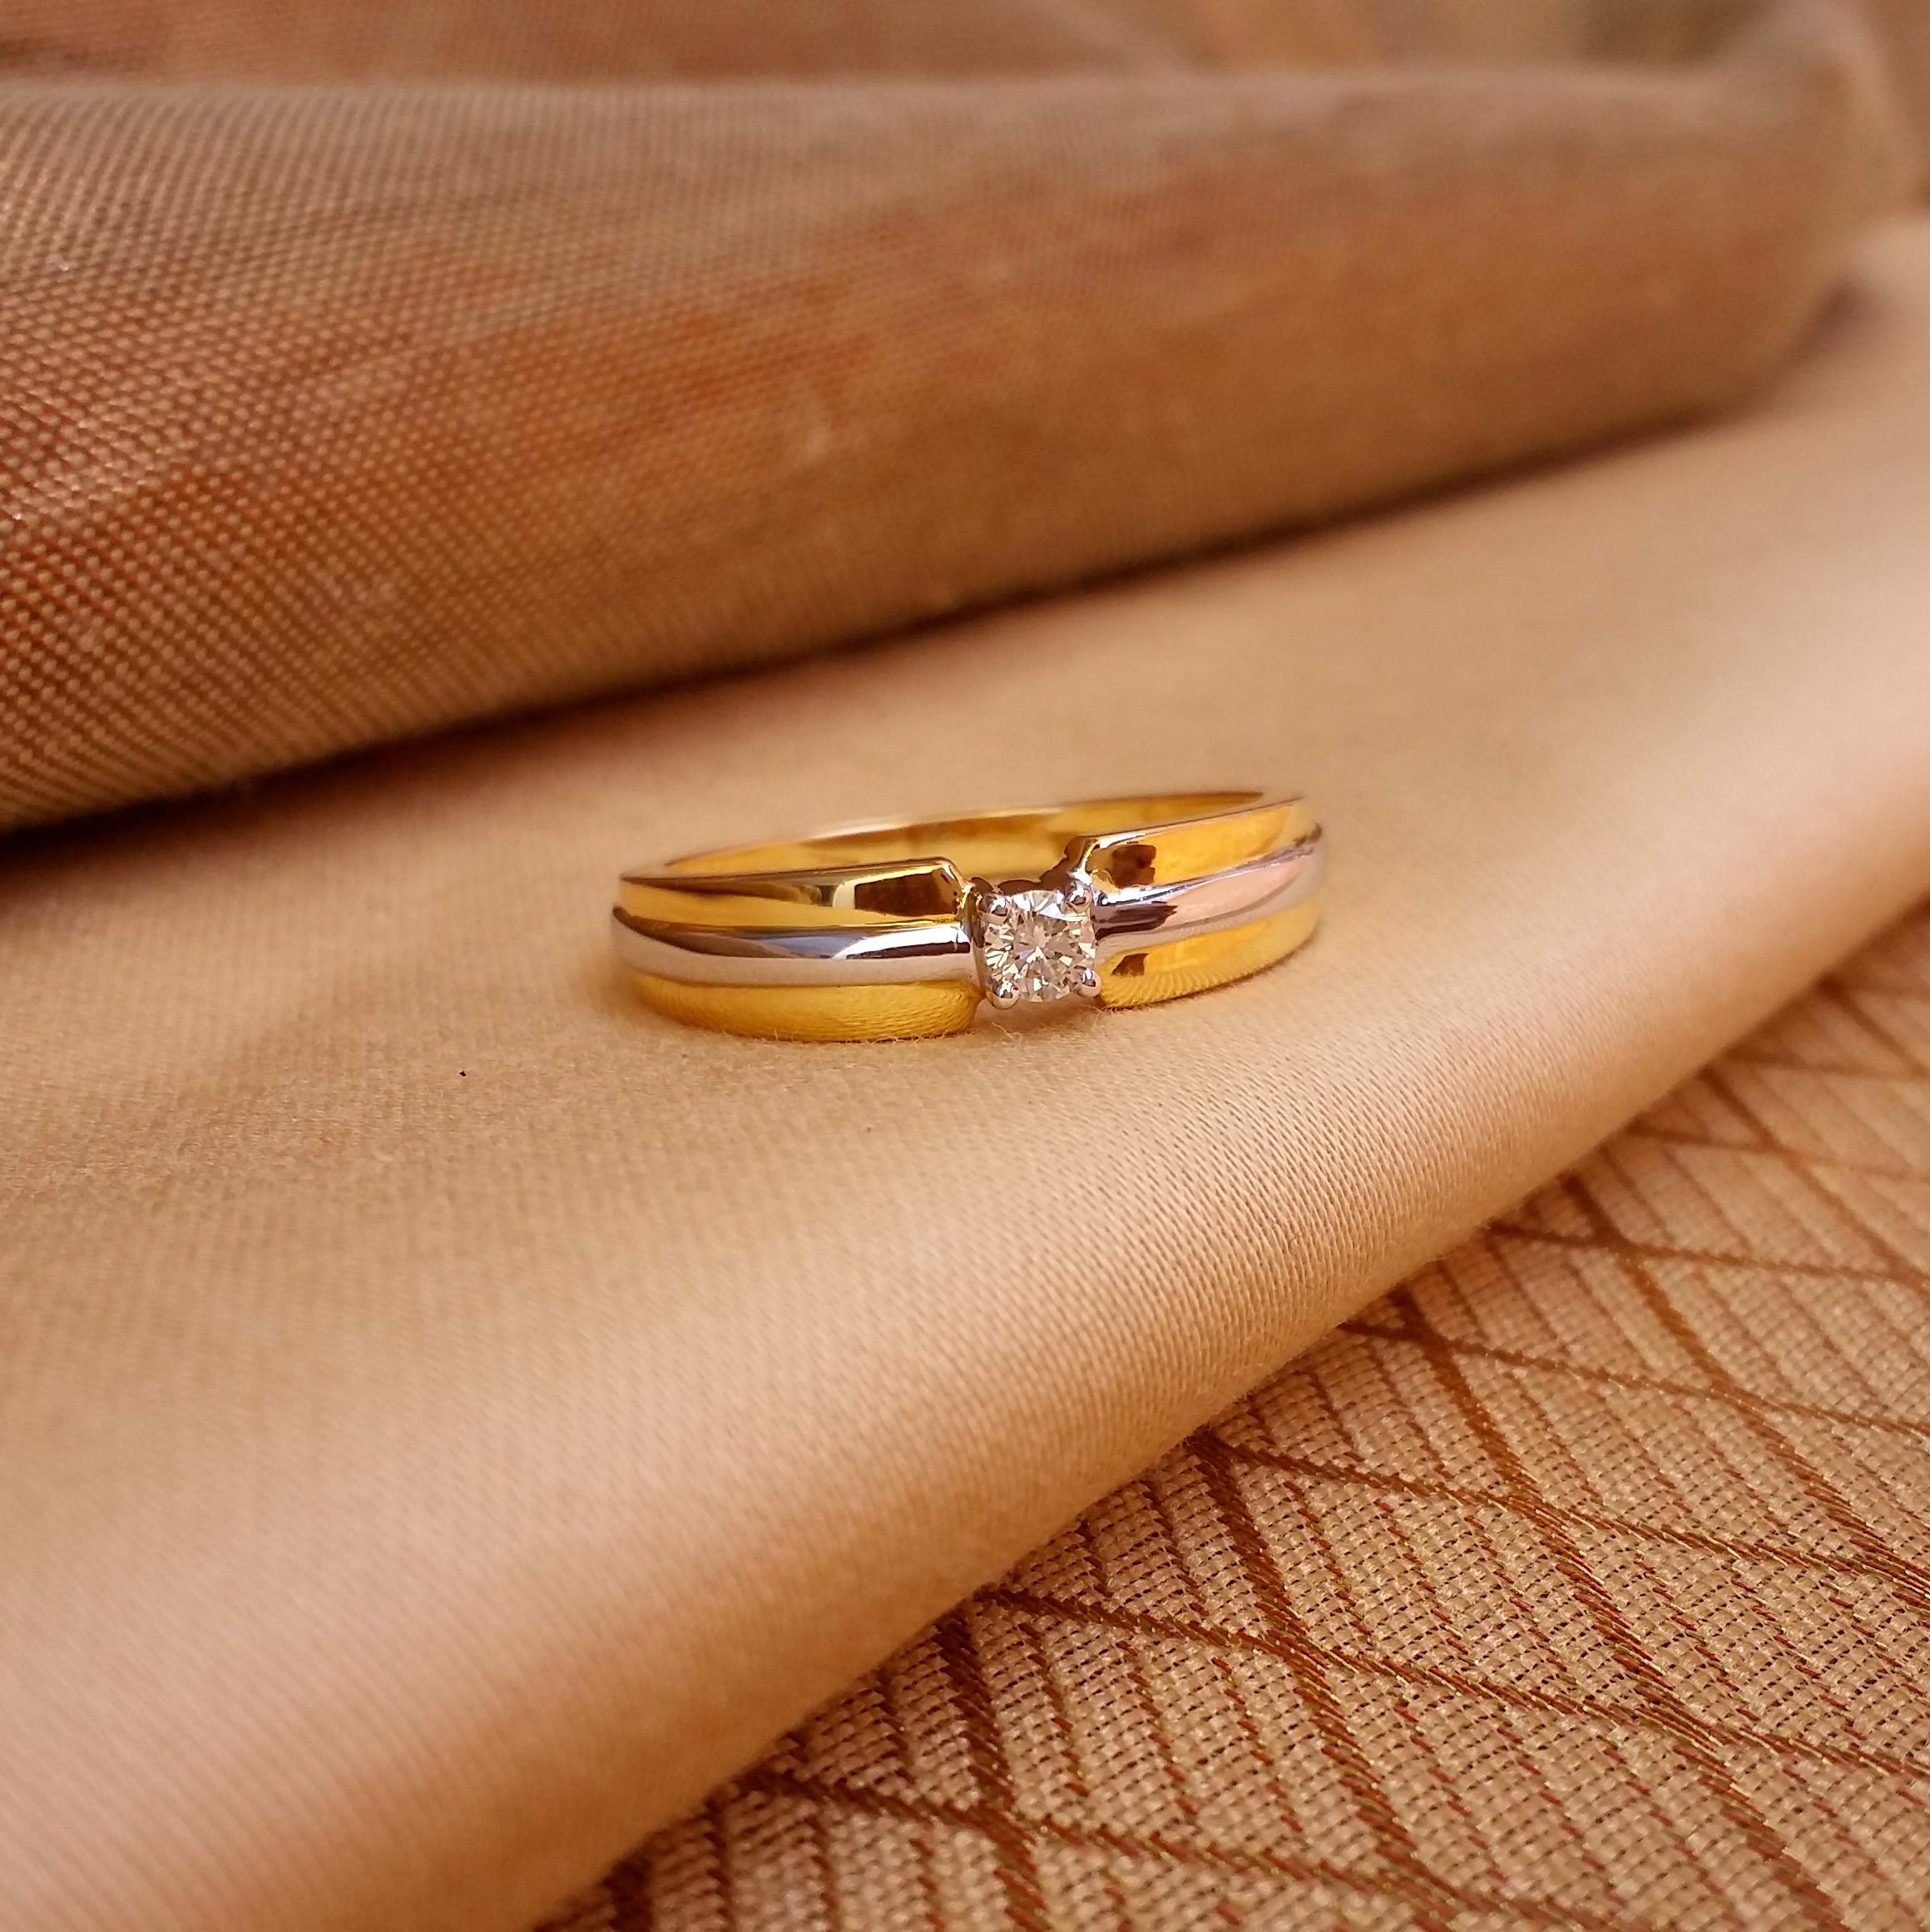 Breathtaking Gold and Diamond Finger Ring for Men